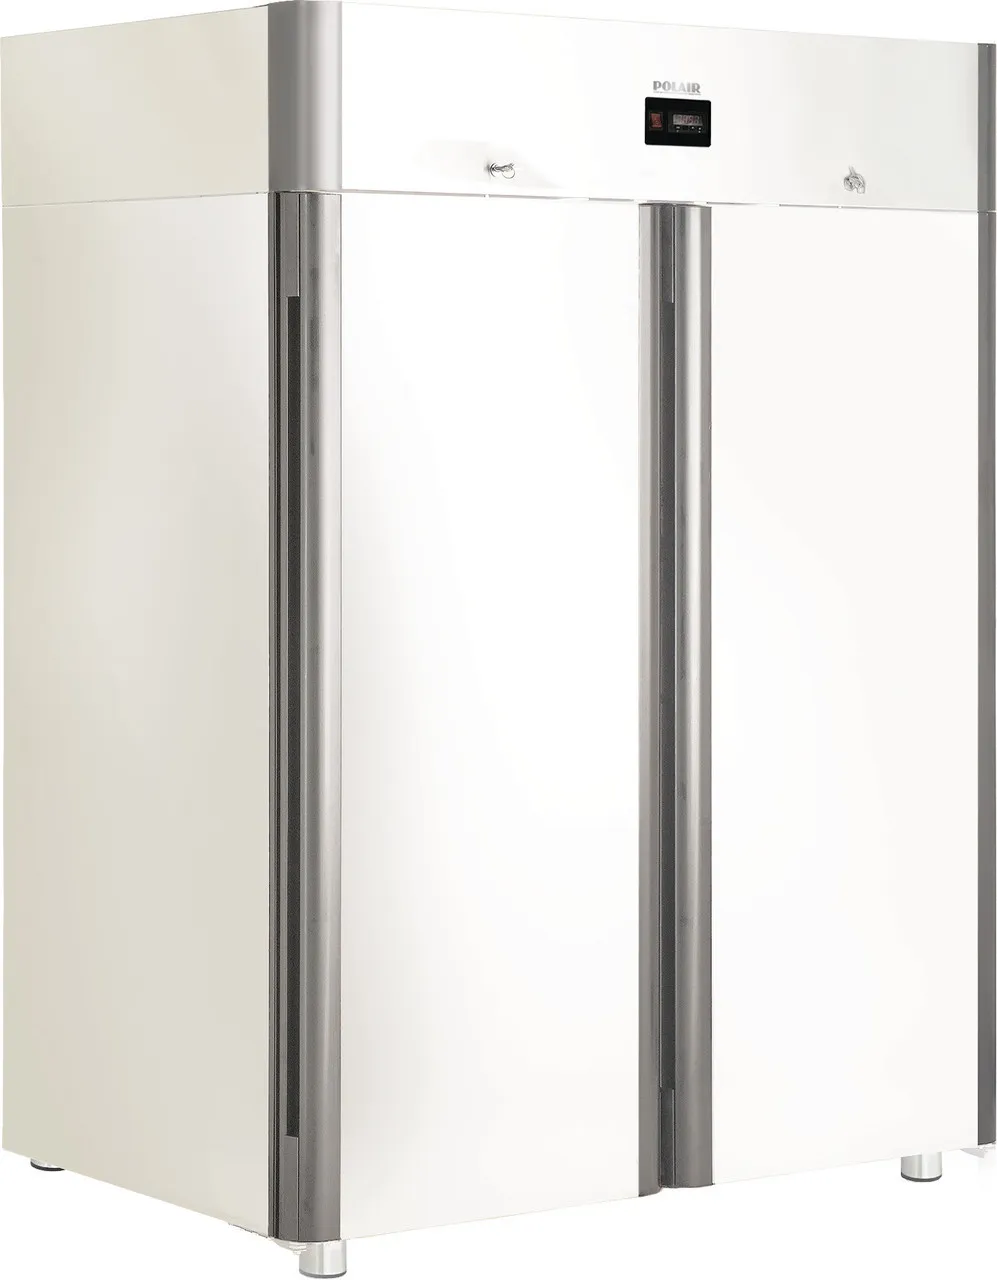 Промышленный шкаф холодильный CV114-S (глухие двери)#4